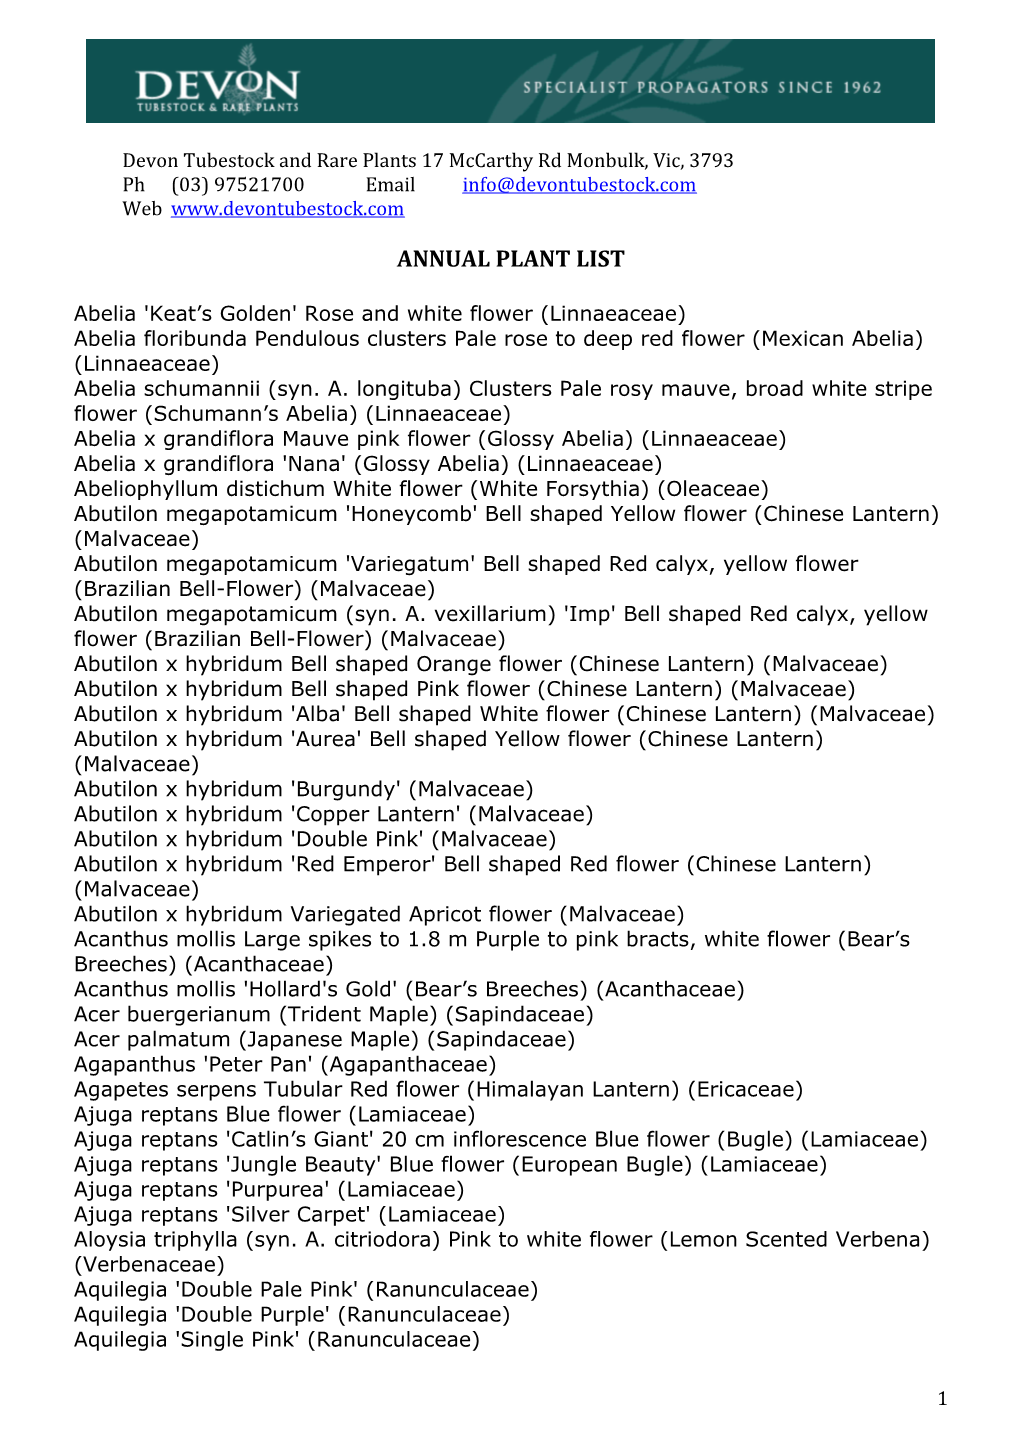 Annual Plant List 2014